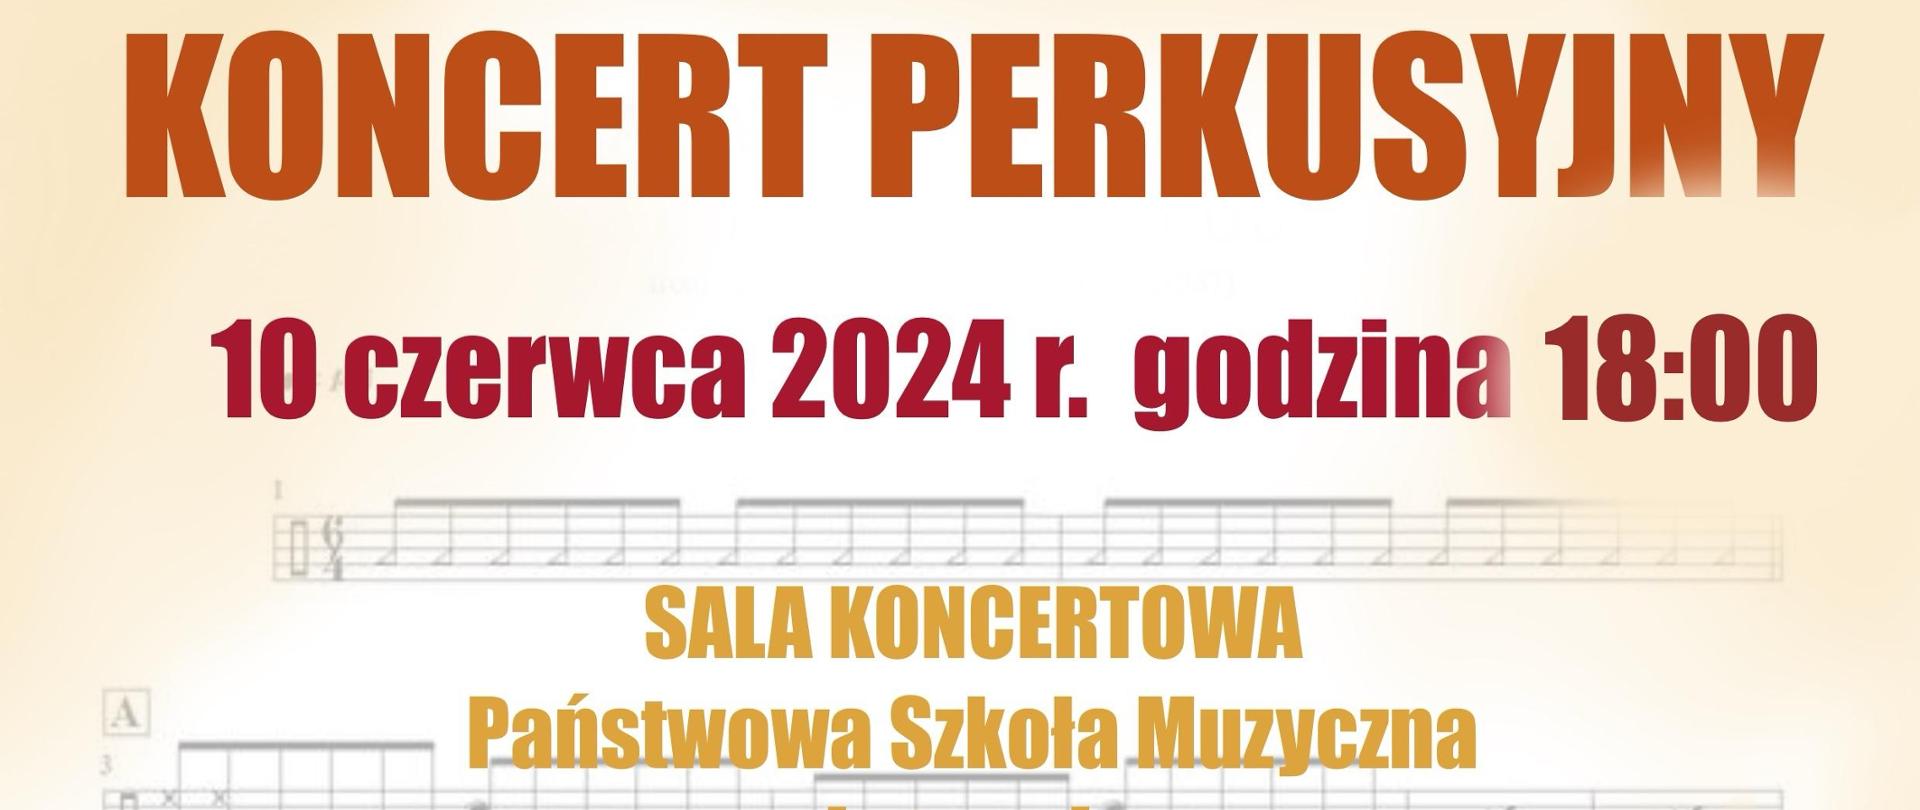 Plakat przedstawia informacje na temat koncertu perkusyjnego w środkowej części plakatu INFORMACJA O miejscu koncertu oraz wymienieni wykonawcy a na samym dole 2 zdjęcia przedstawiające perkusistów